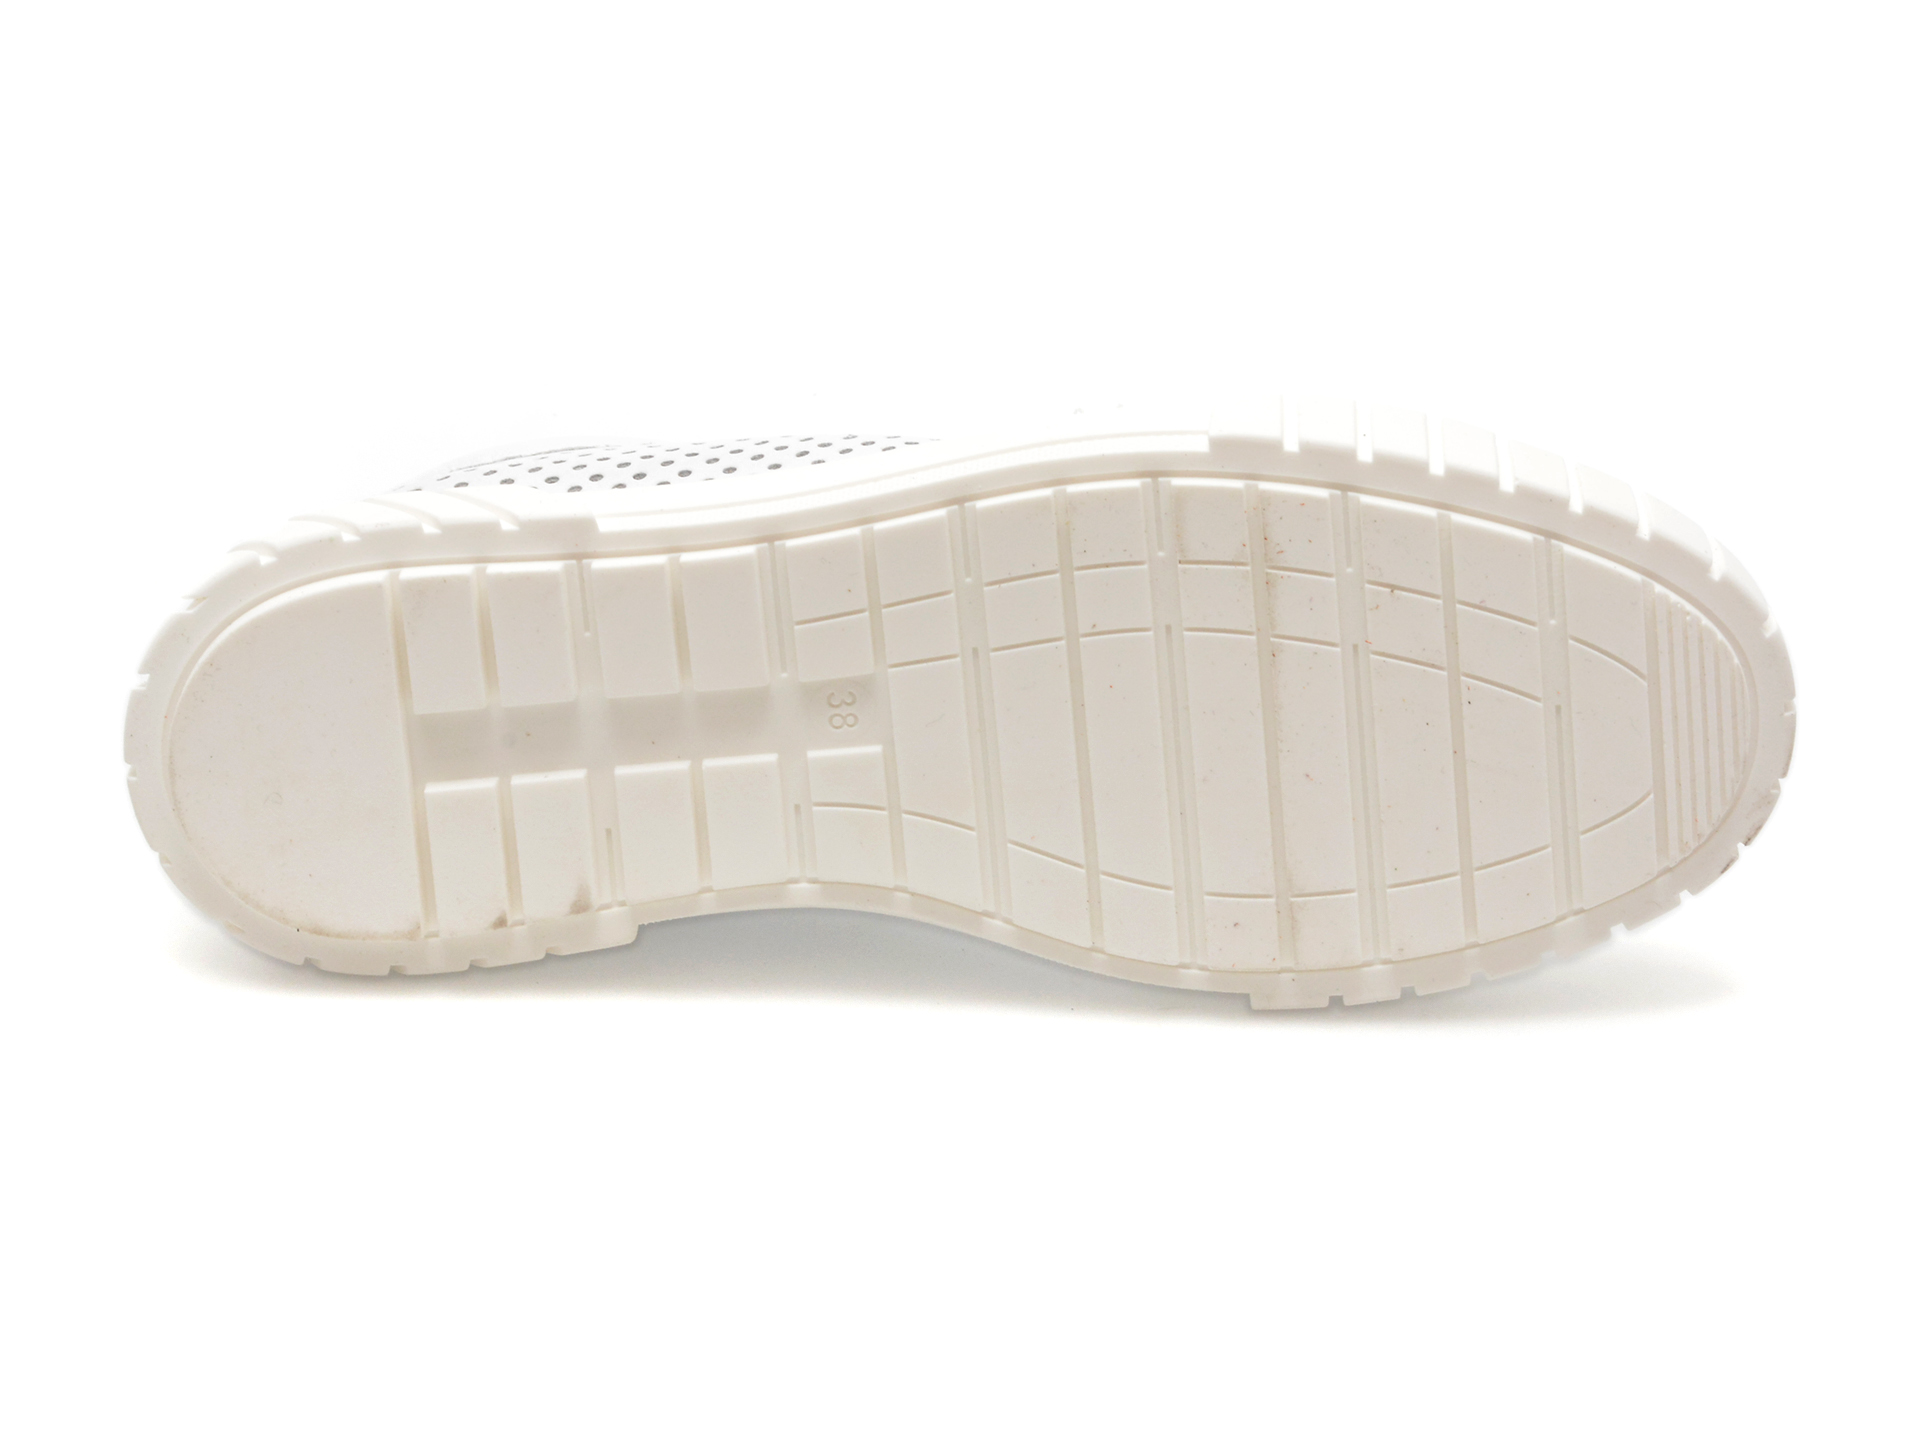 Pantofi GOLD DEER albi, 1187062, din piele naturala